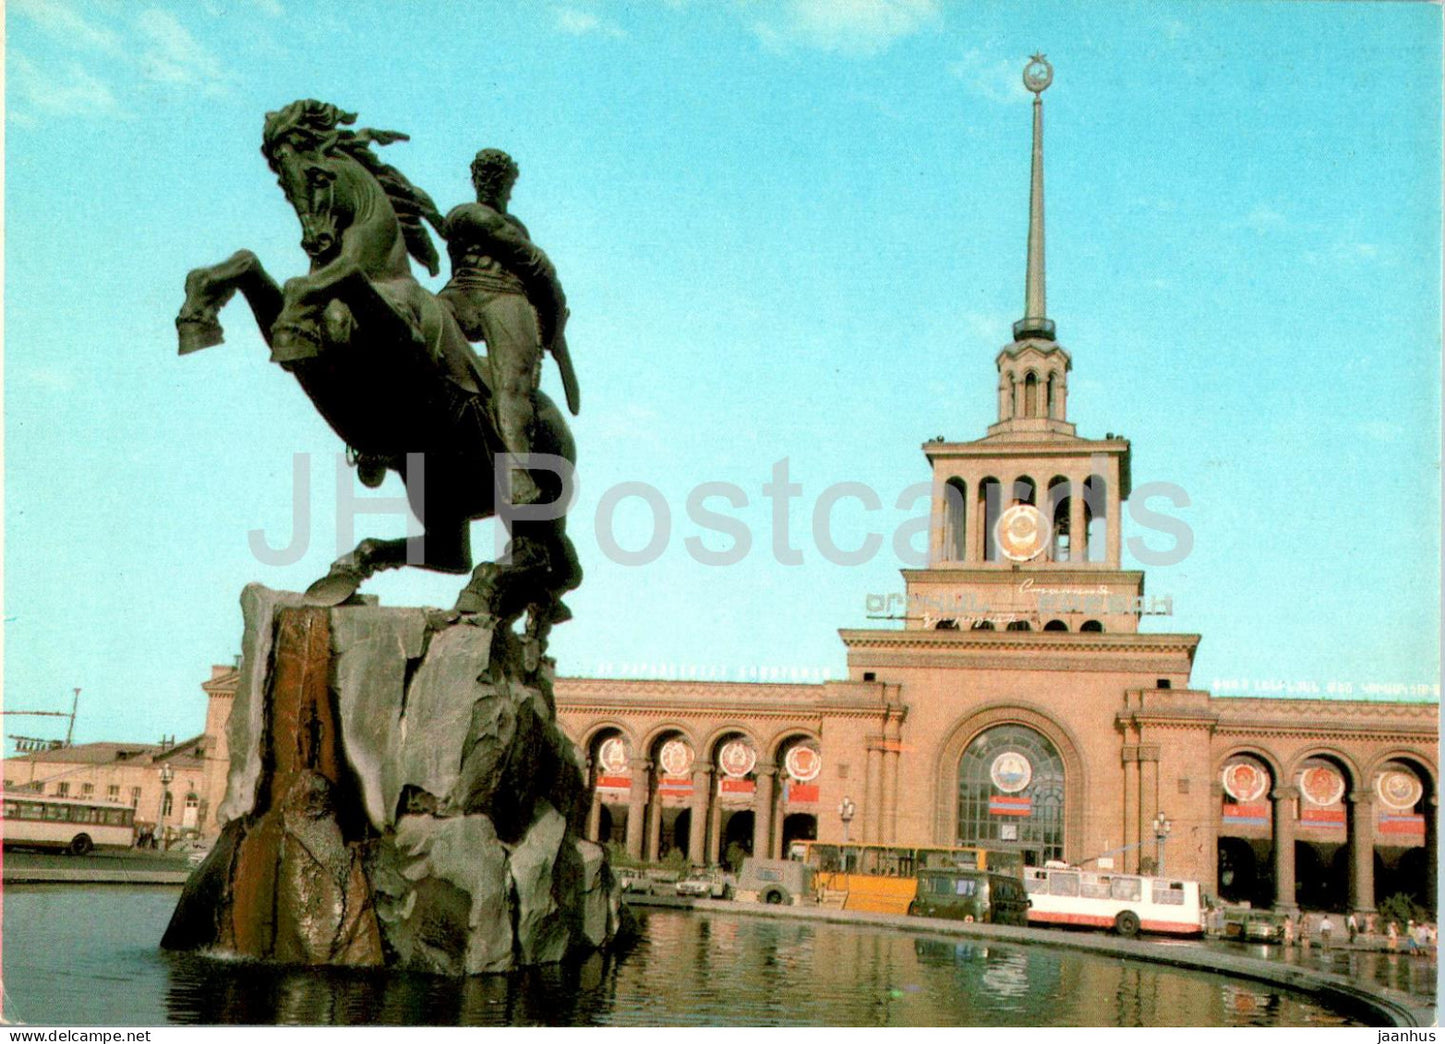 Yerevan - David of Sasun monument - postal stationery - 1985 - Armenia USSR - unused